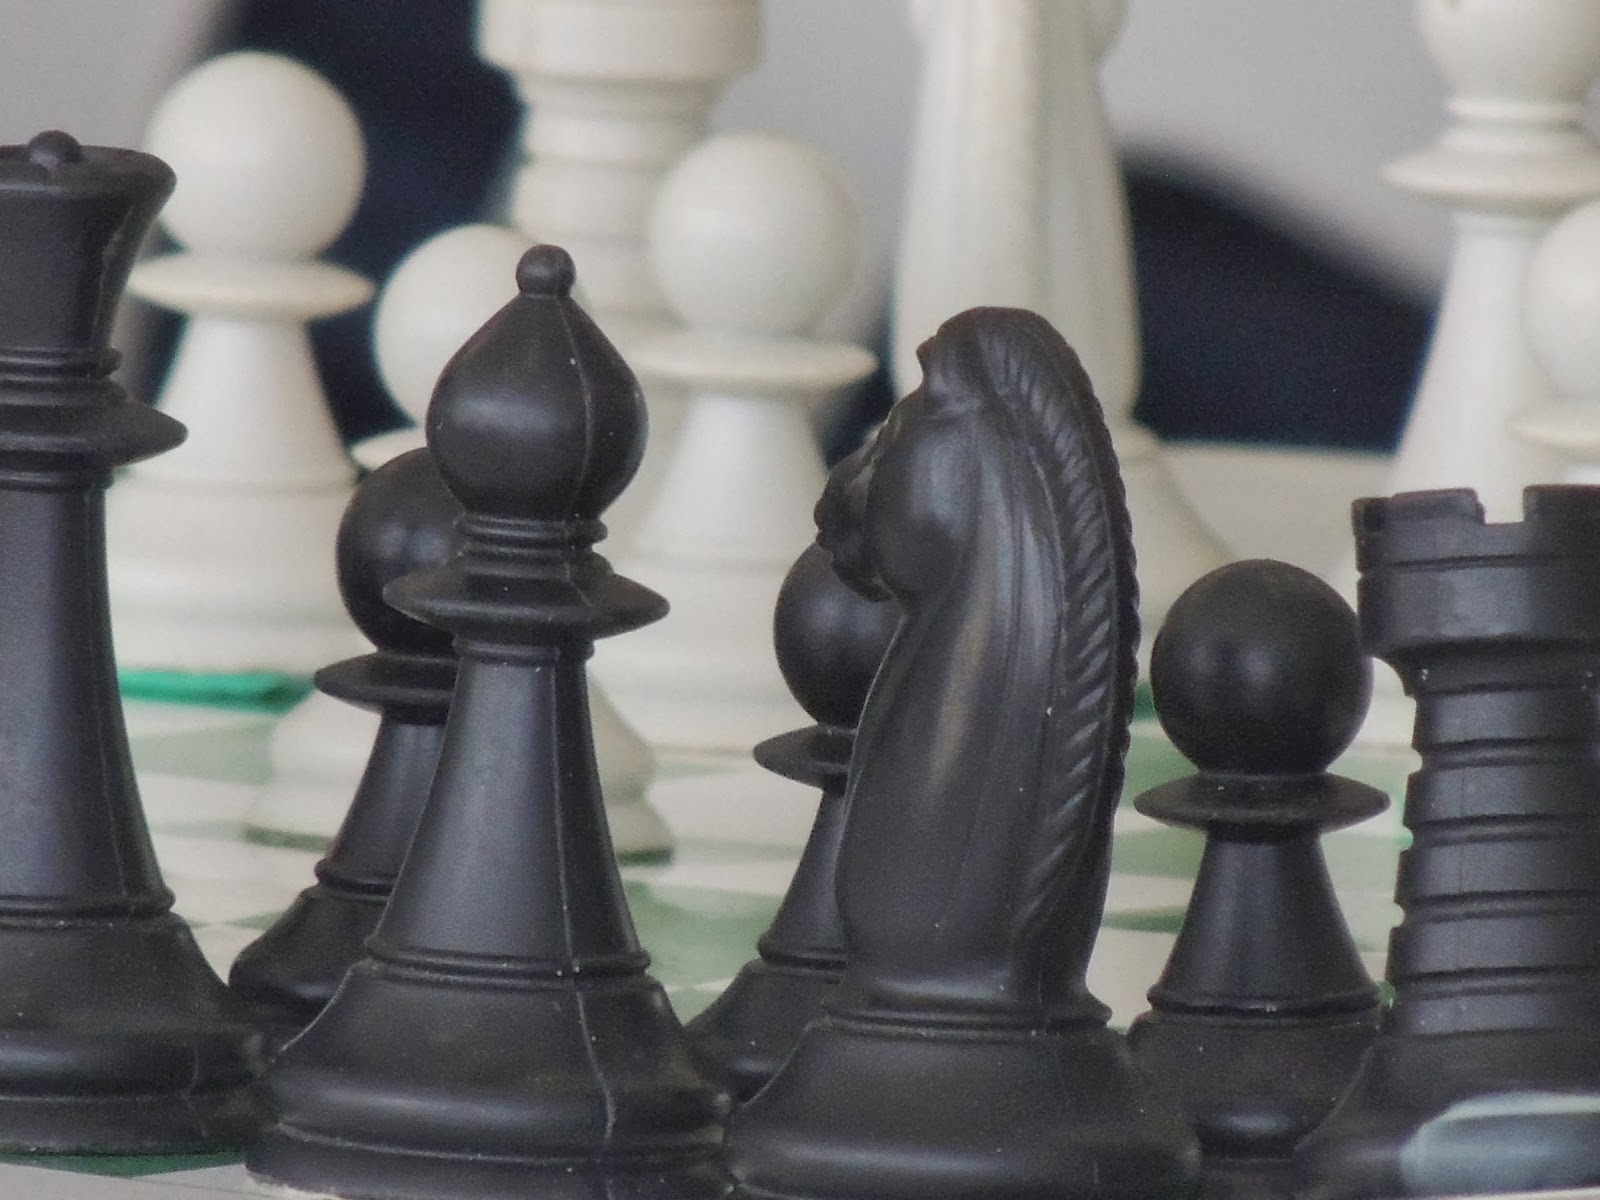 Osasquenses se destacam no Brasileiro de xadrez - Prefeitura de Osasco